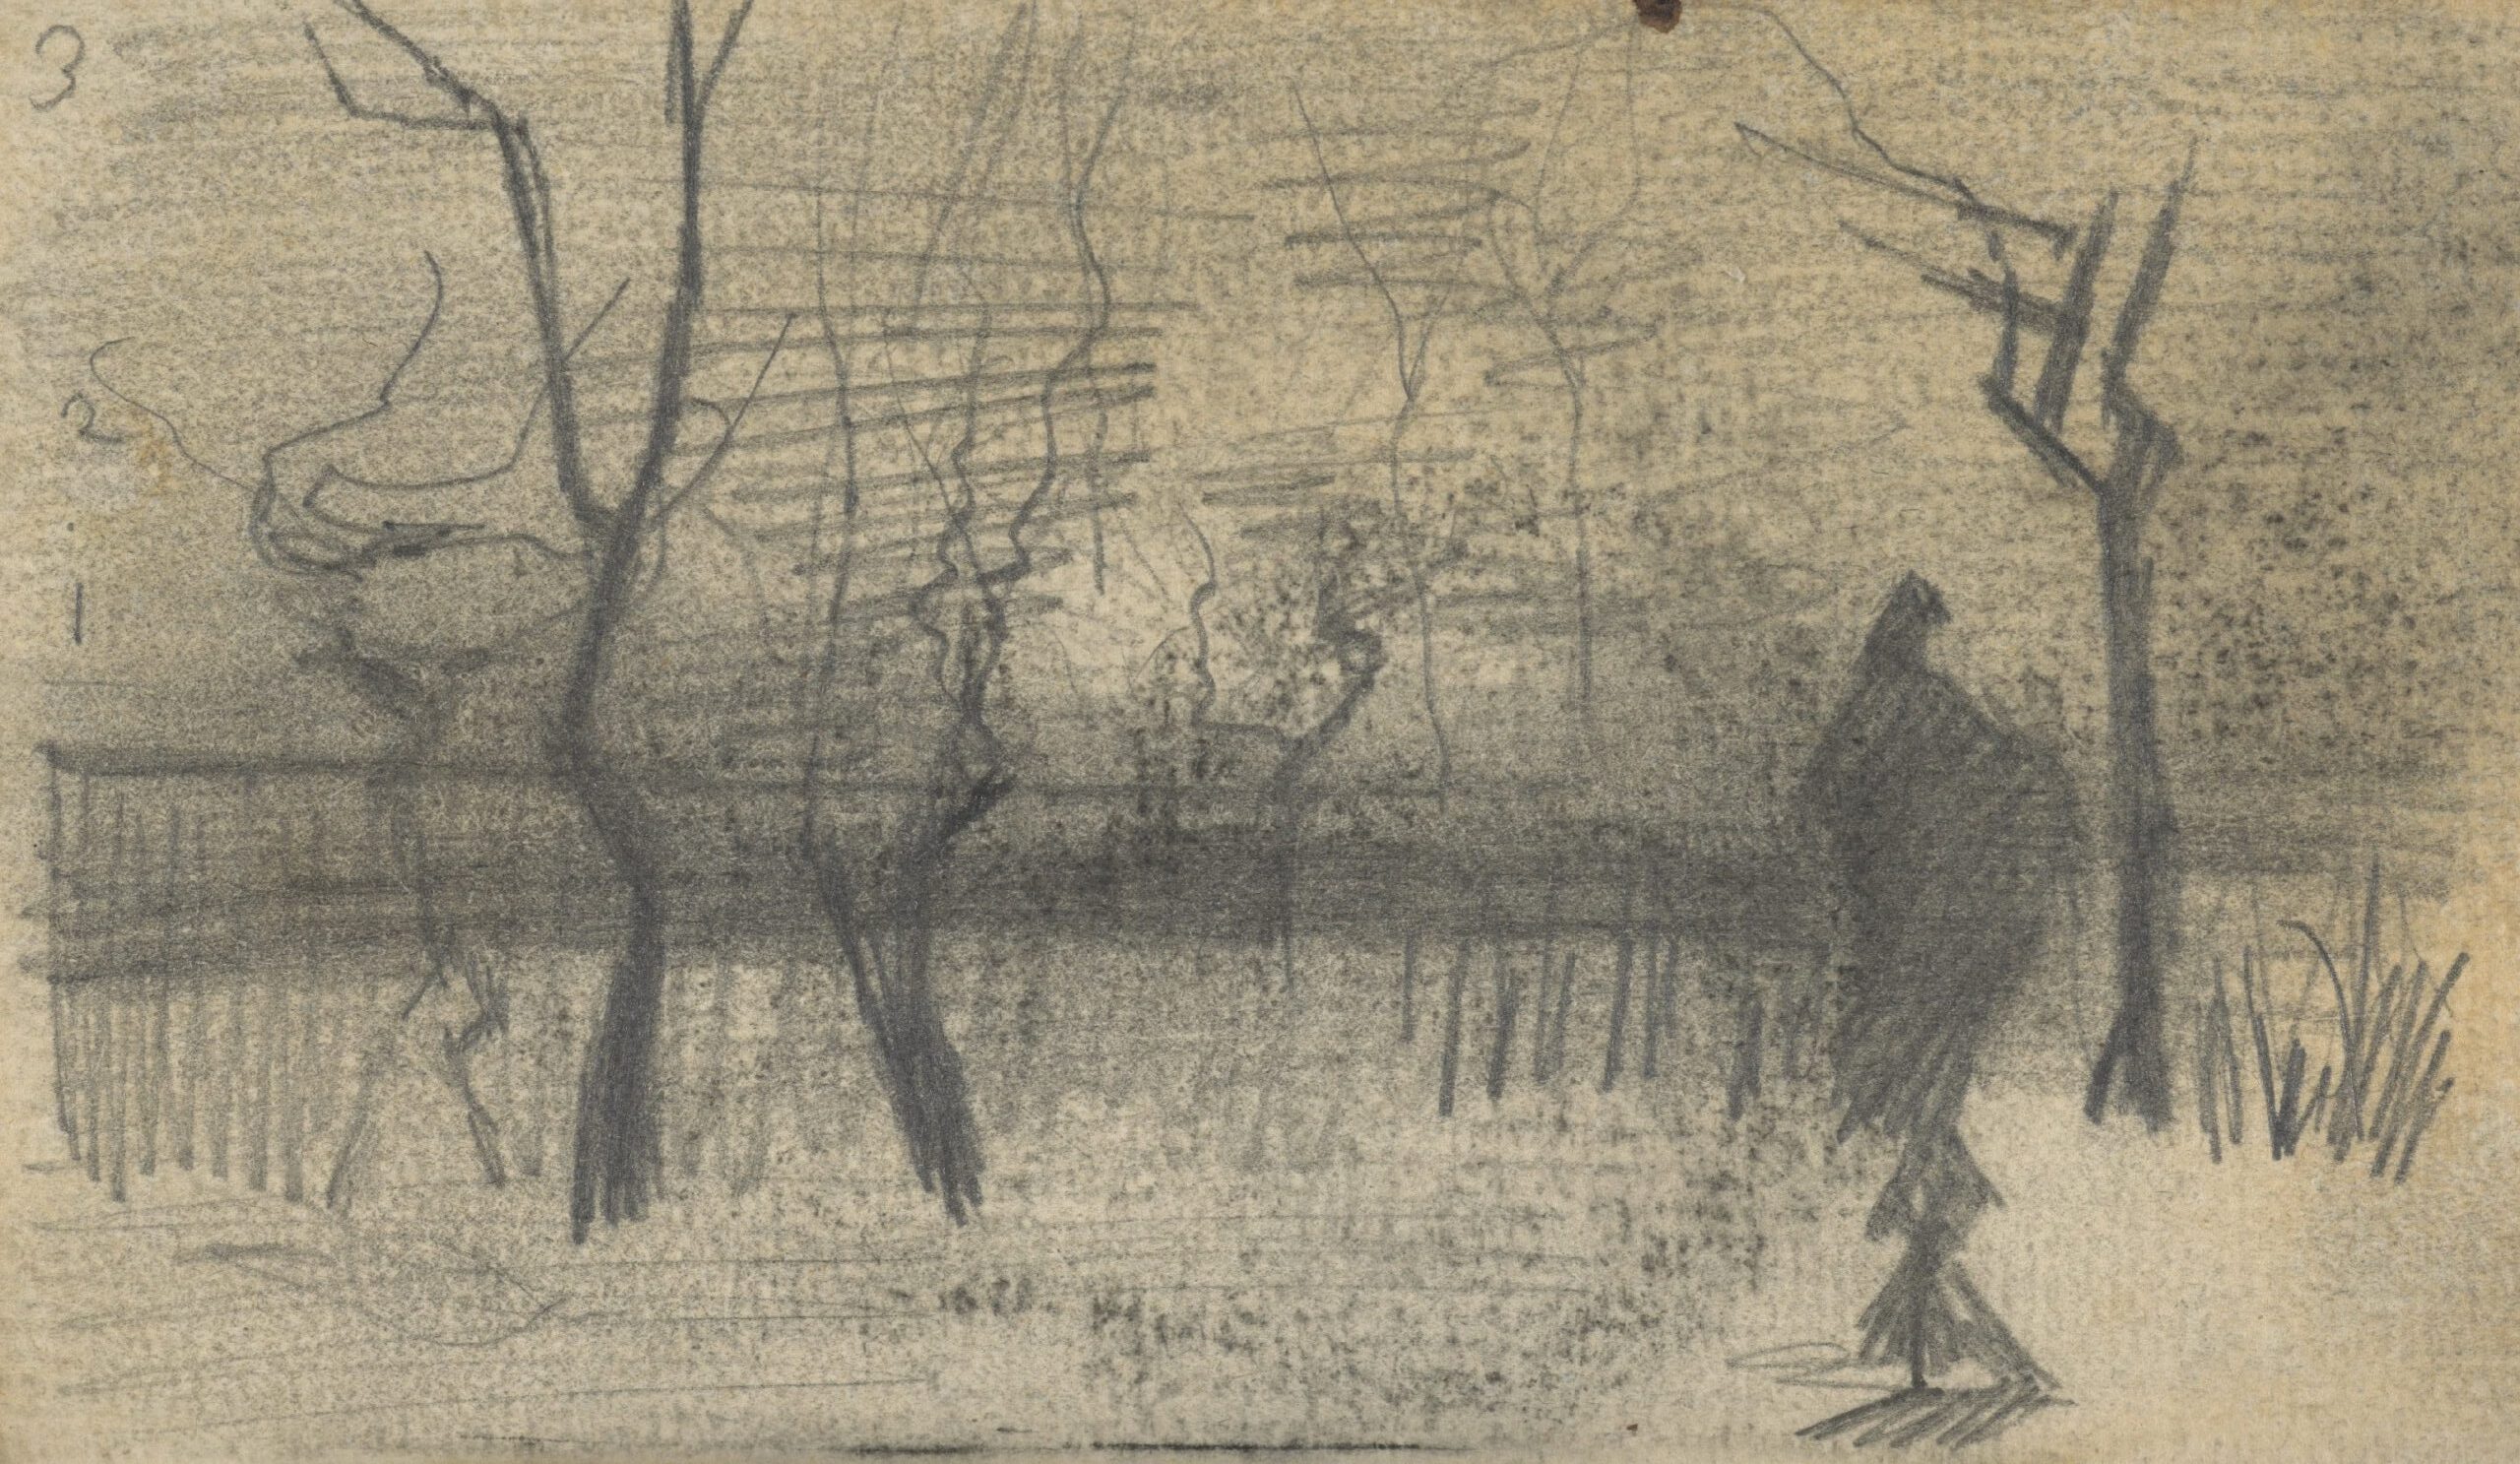 Landschap Vincent van Gogh (1853 - 1890), Nuenen, december 1884-maart 1885